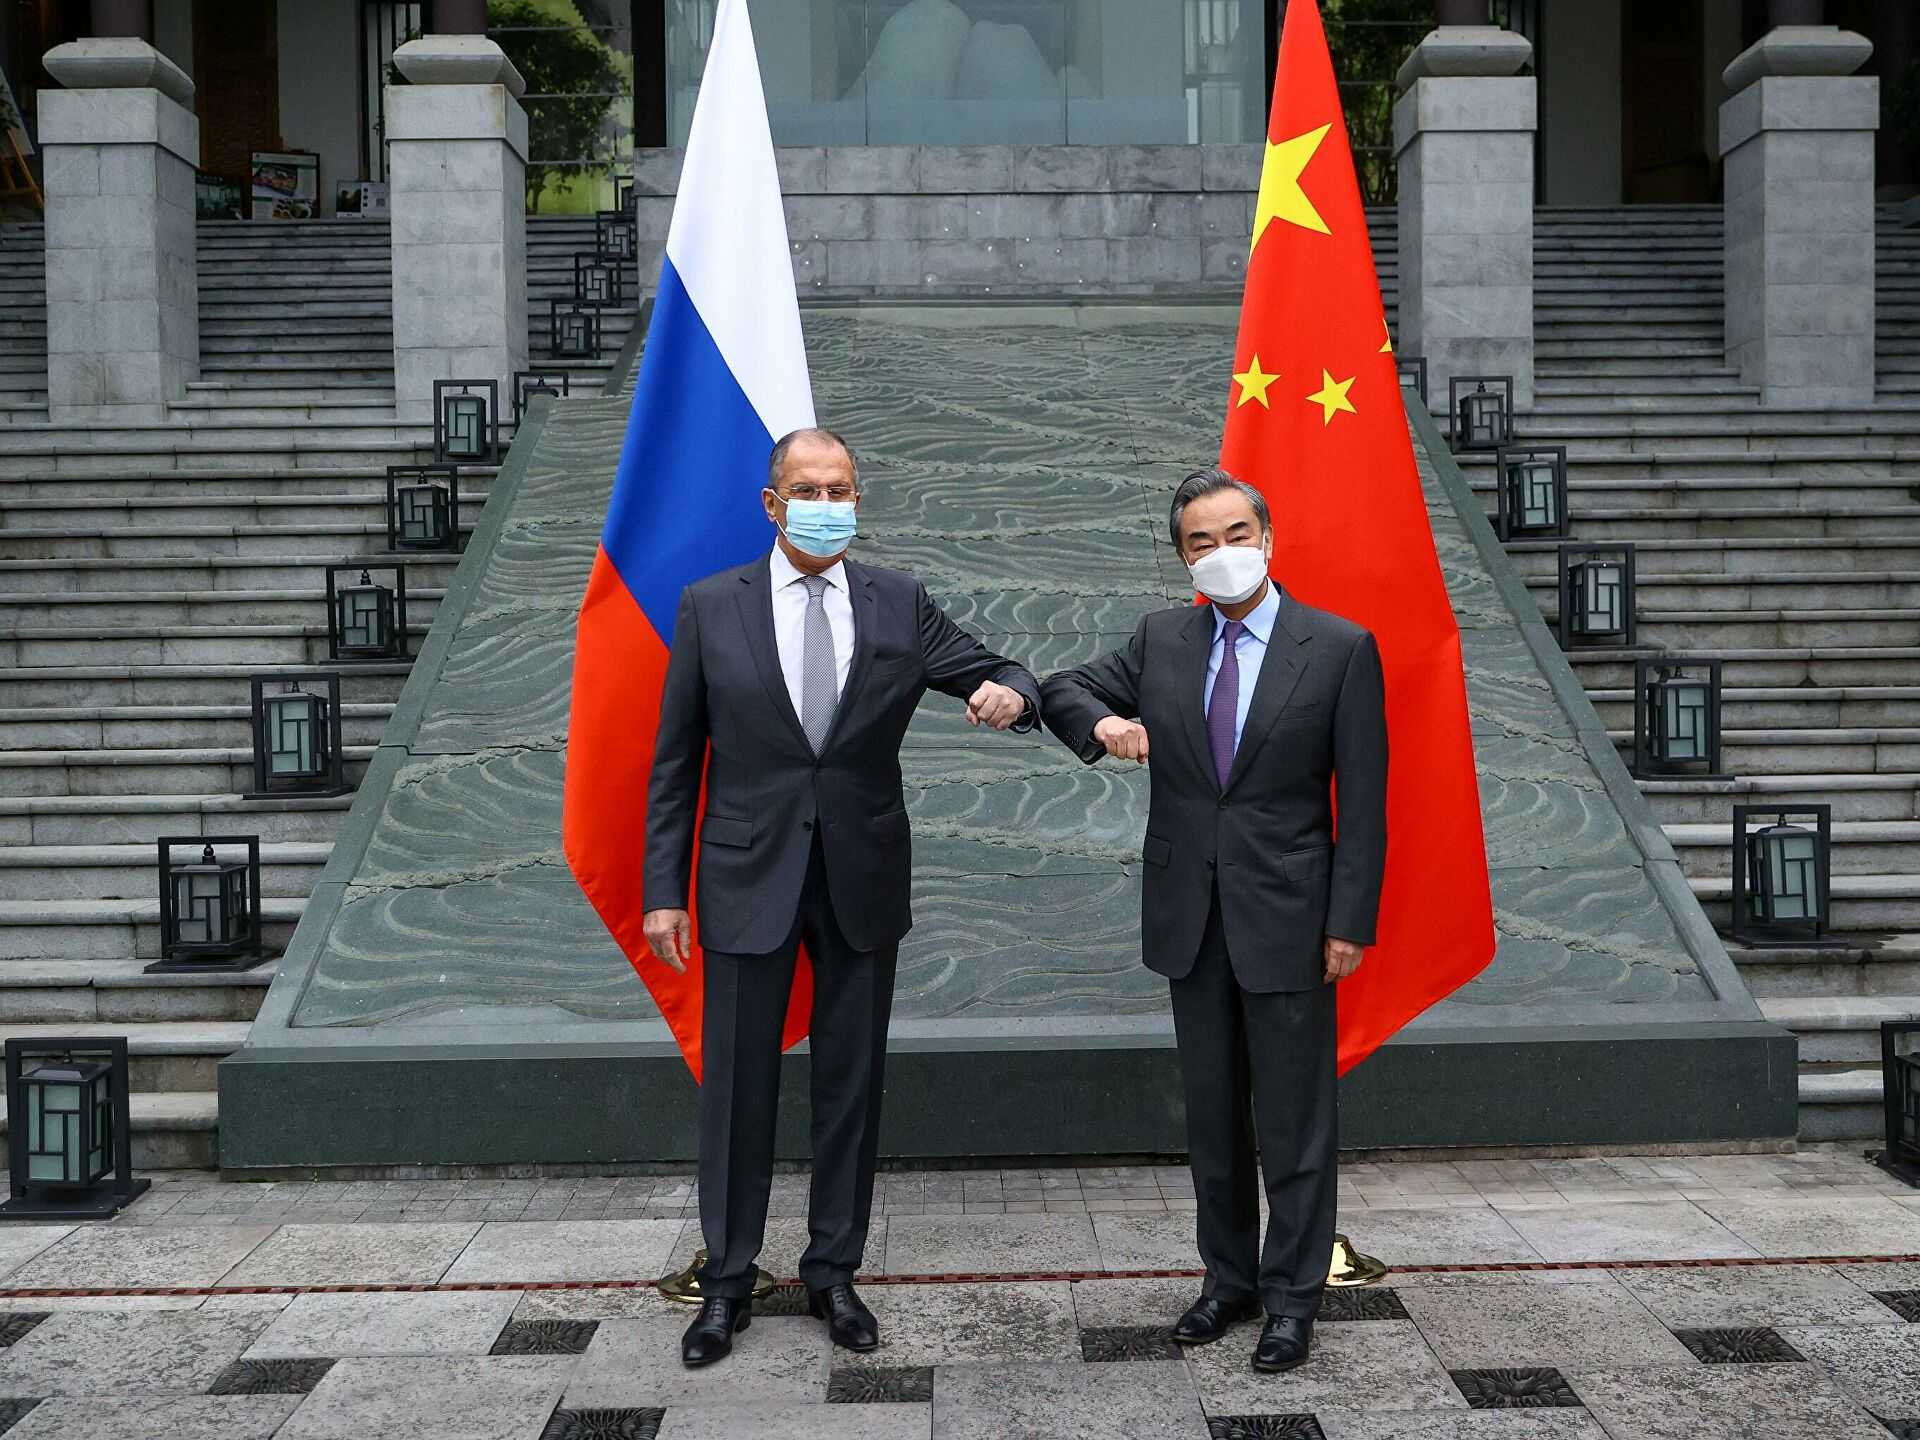 США угрожают санкциями Китаю за дружбу с Россией